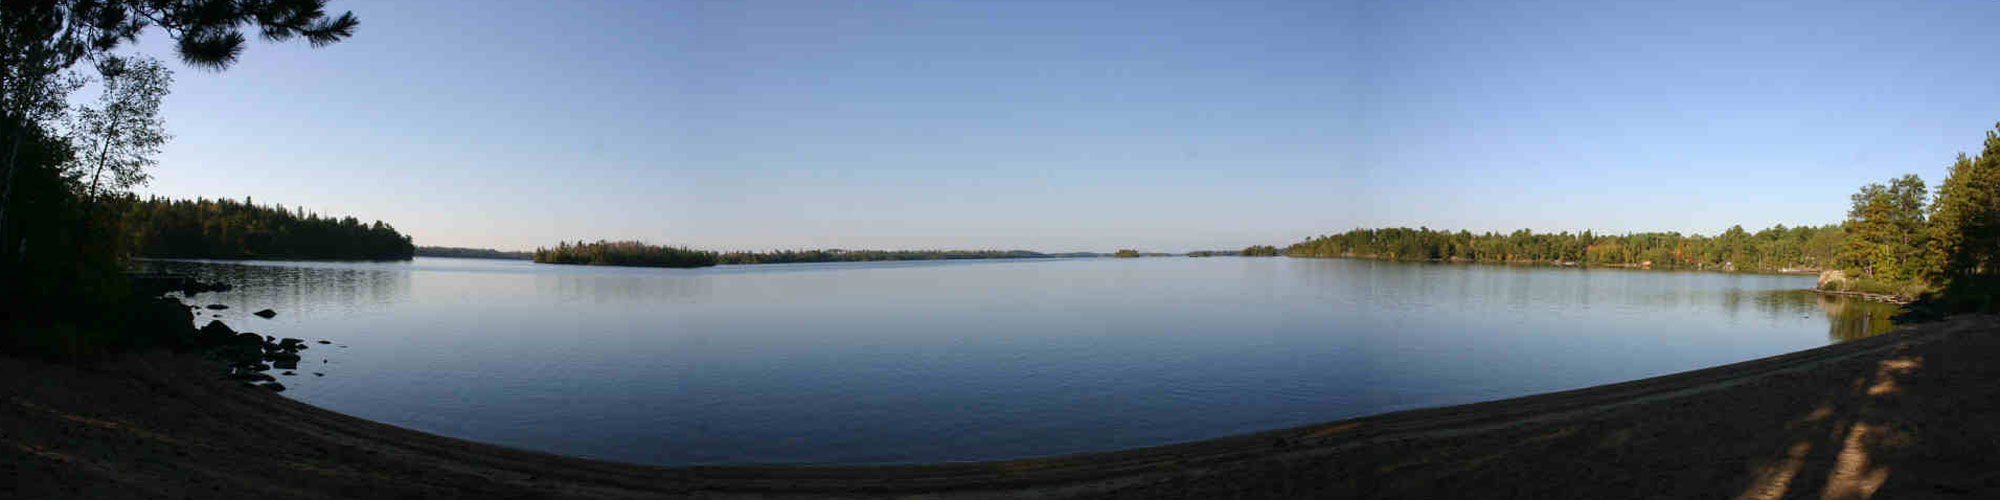 Lake Panoramic